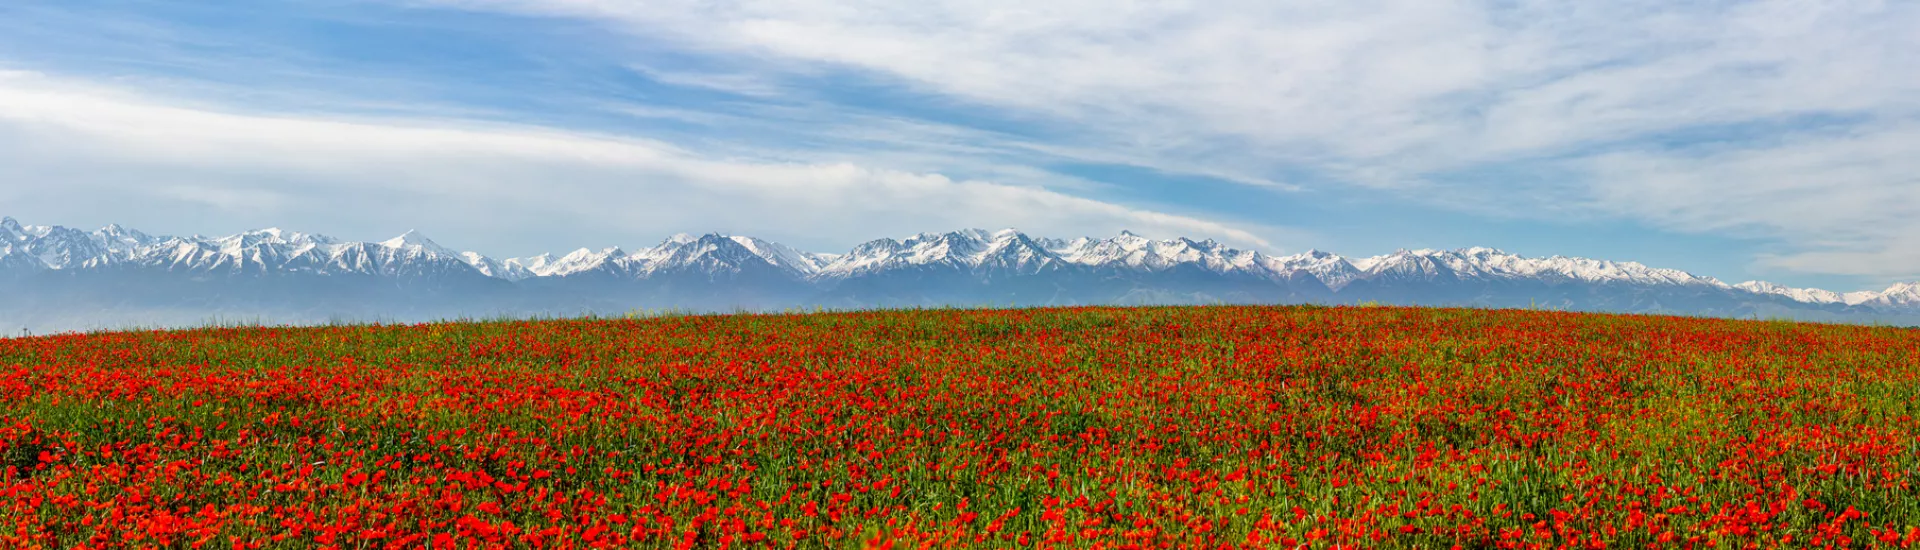 Poppy field in Kazakhstan